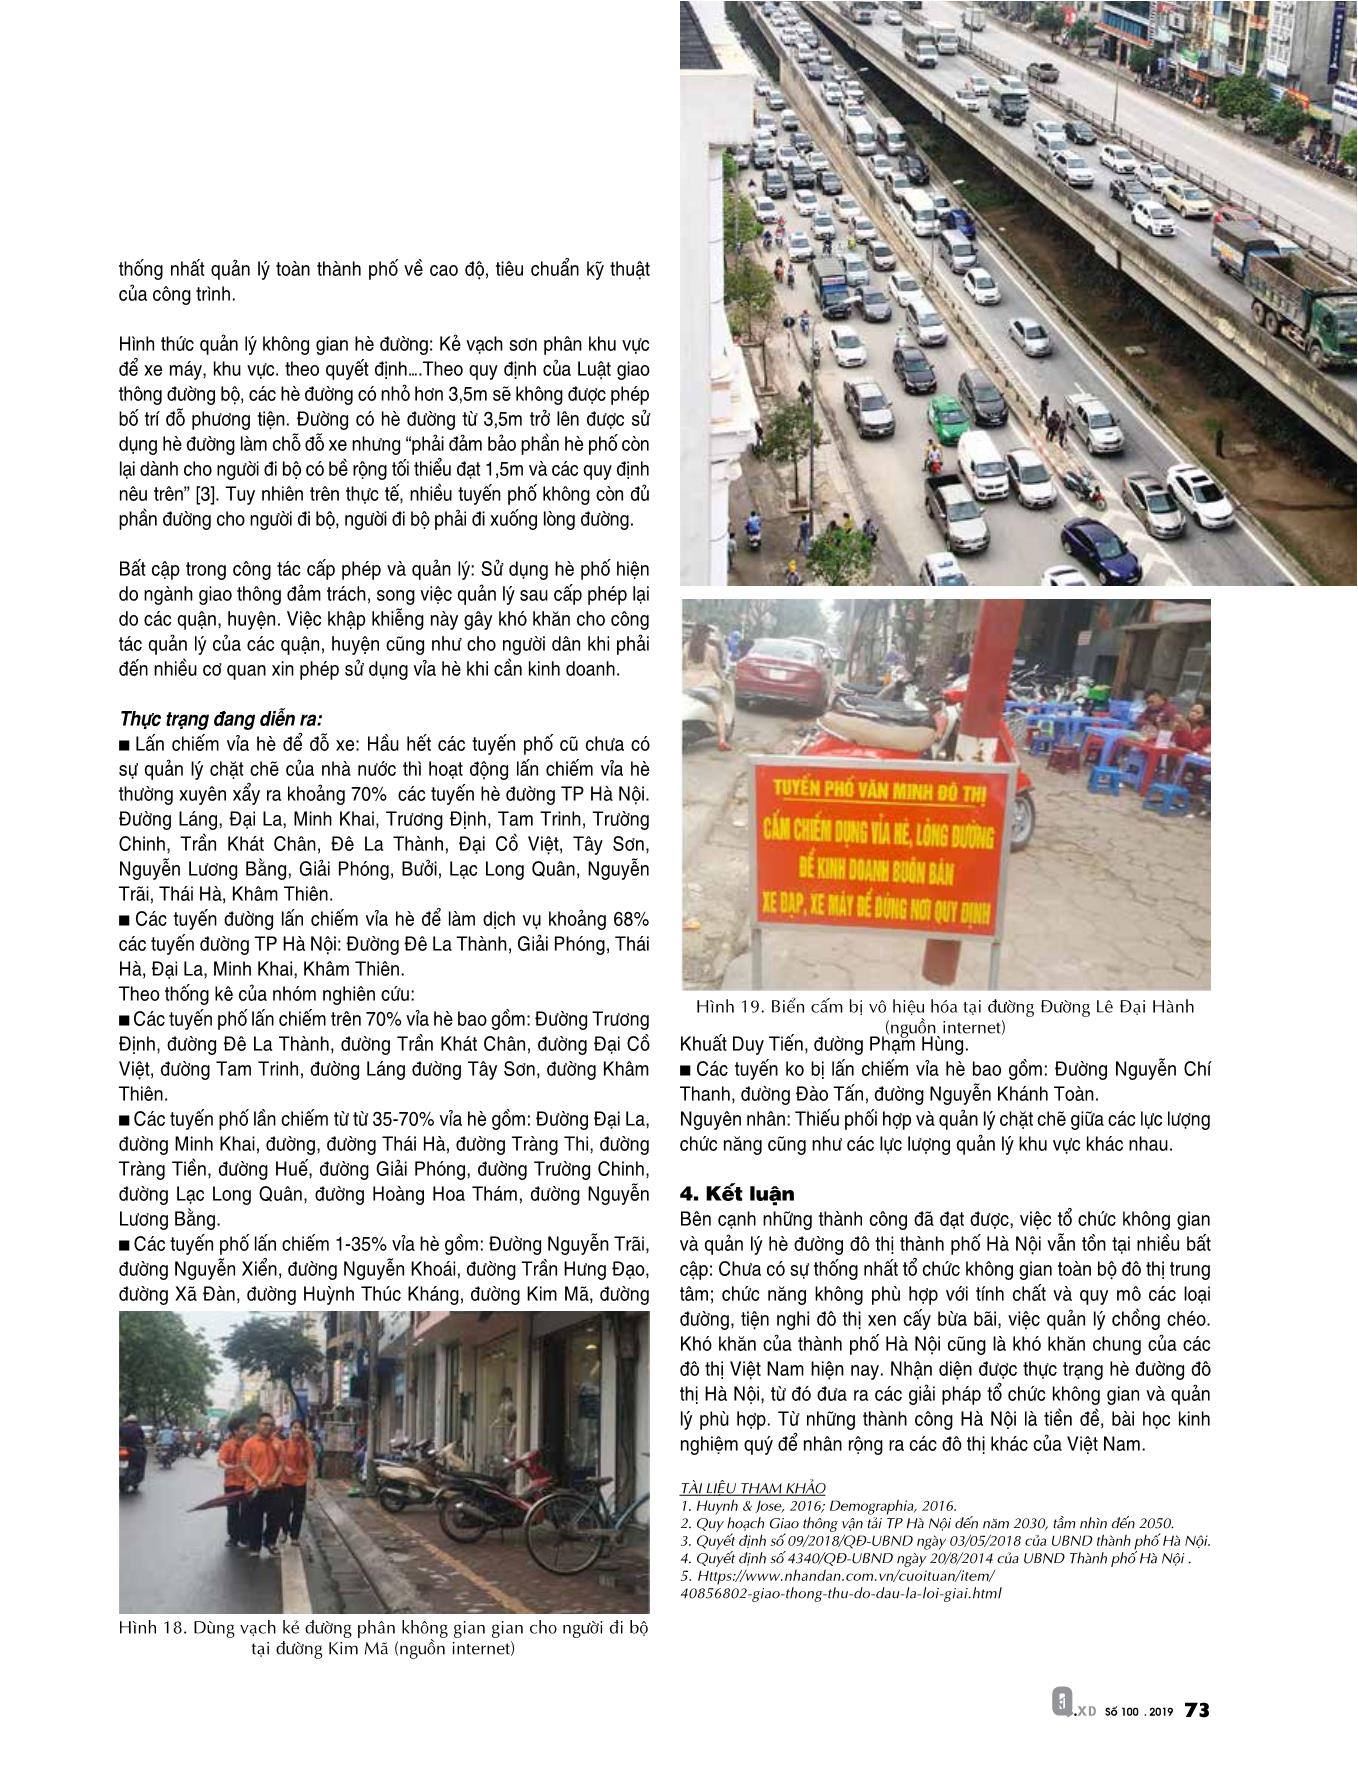 Thực trạng tổ chức không gian và quản lý hè đường đô thị thành phố Hà Nội trang 6